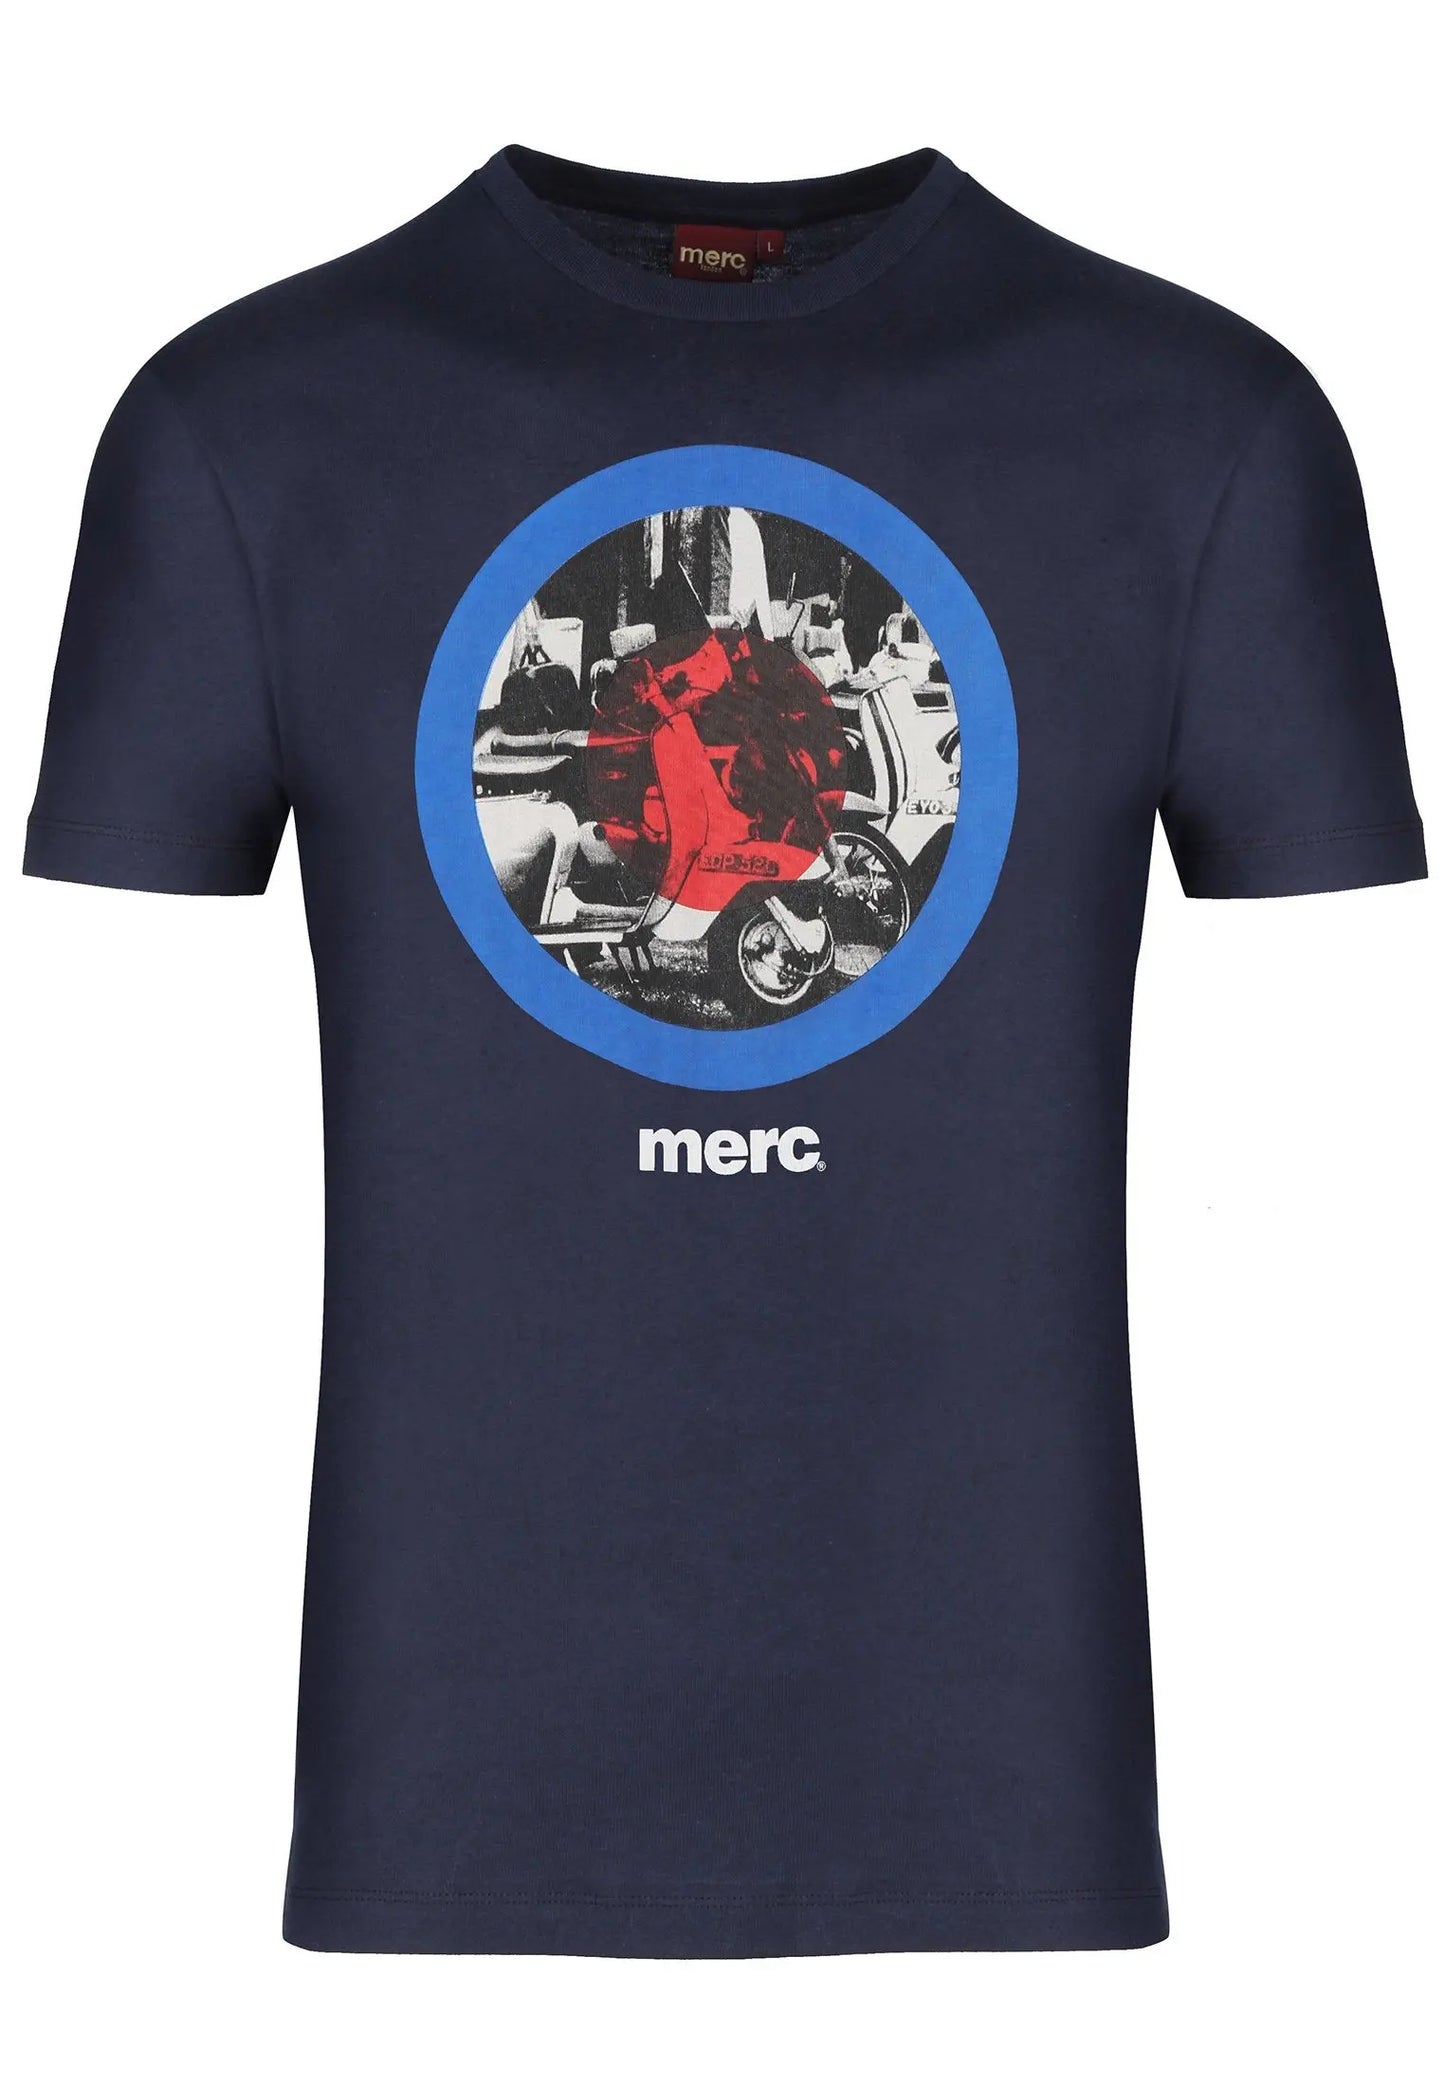 Merc London Granville Print T-Shirt - Navy From Woven Durham